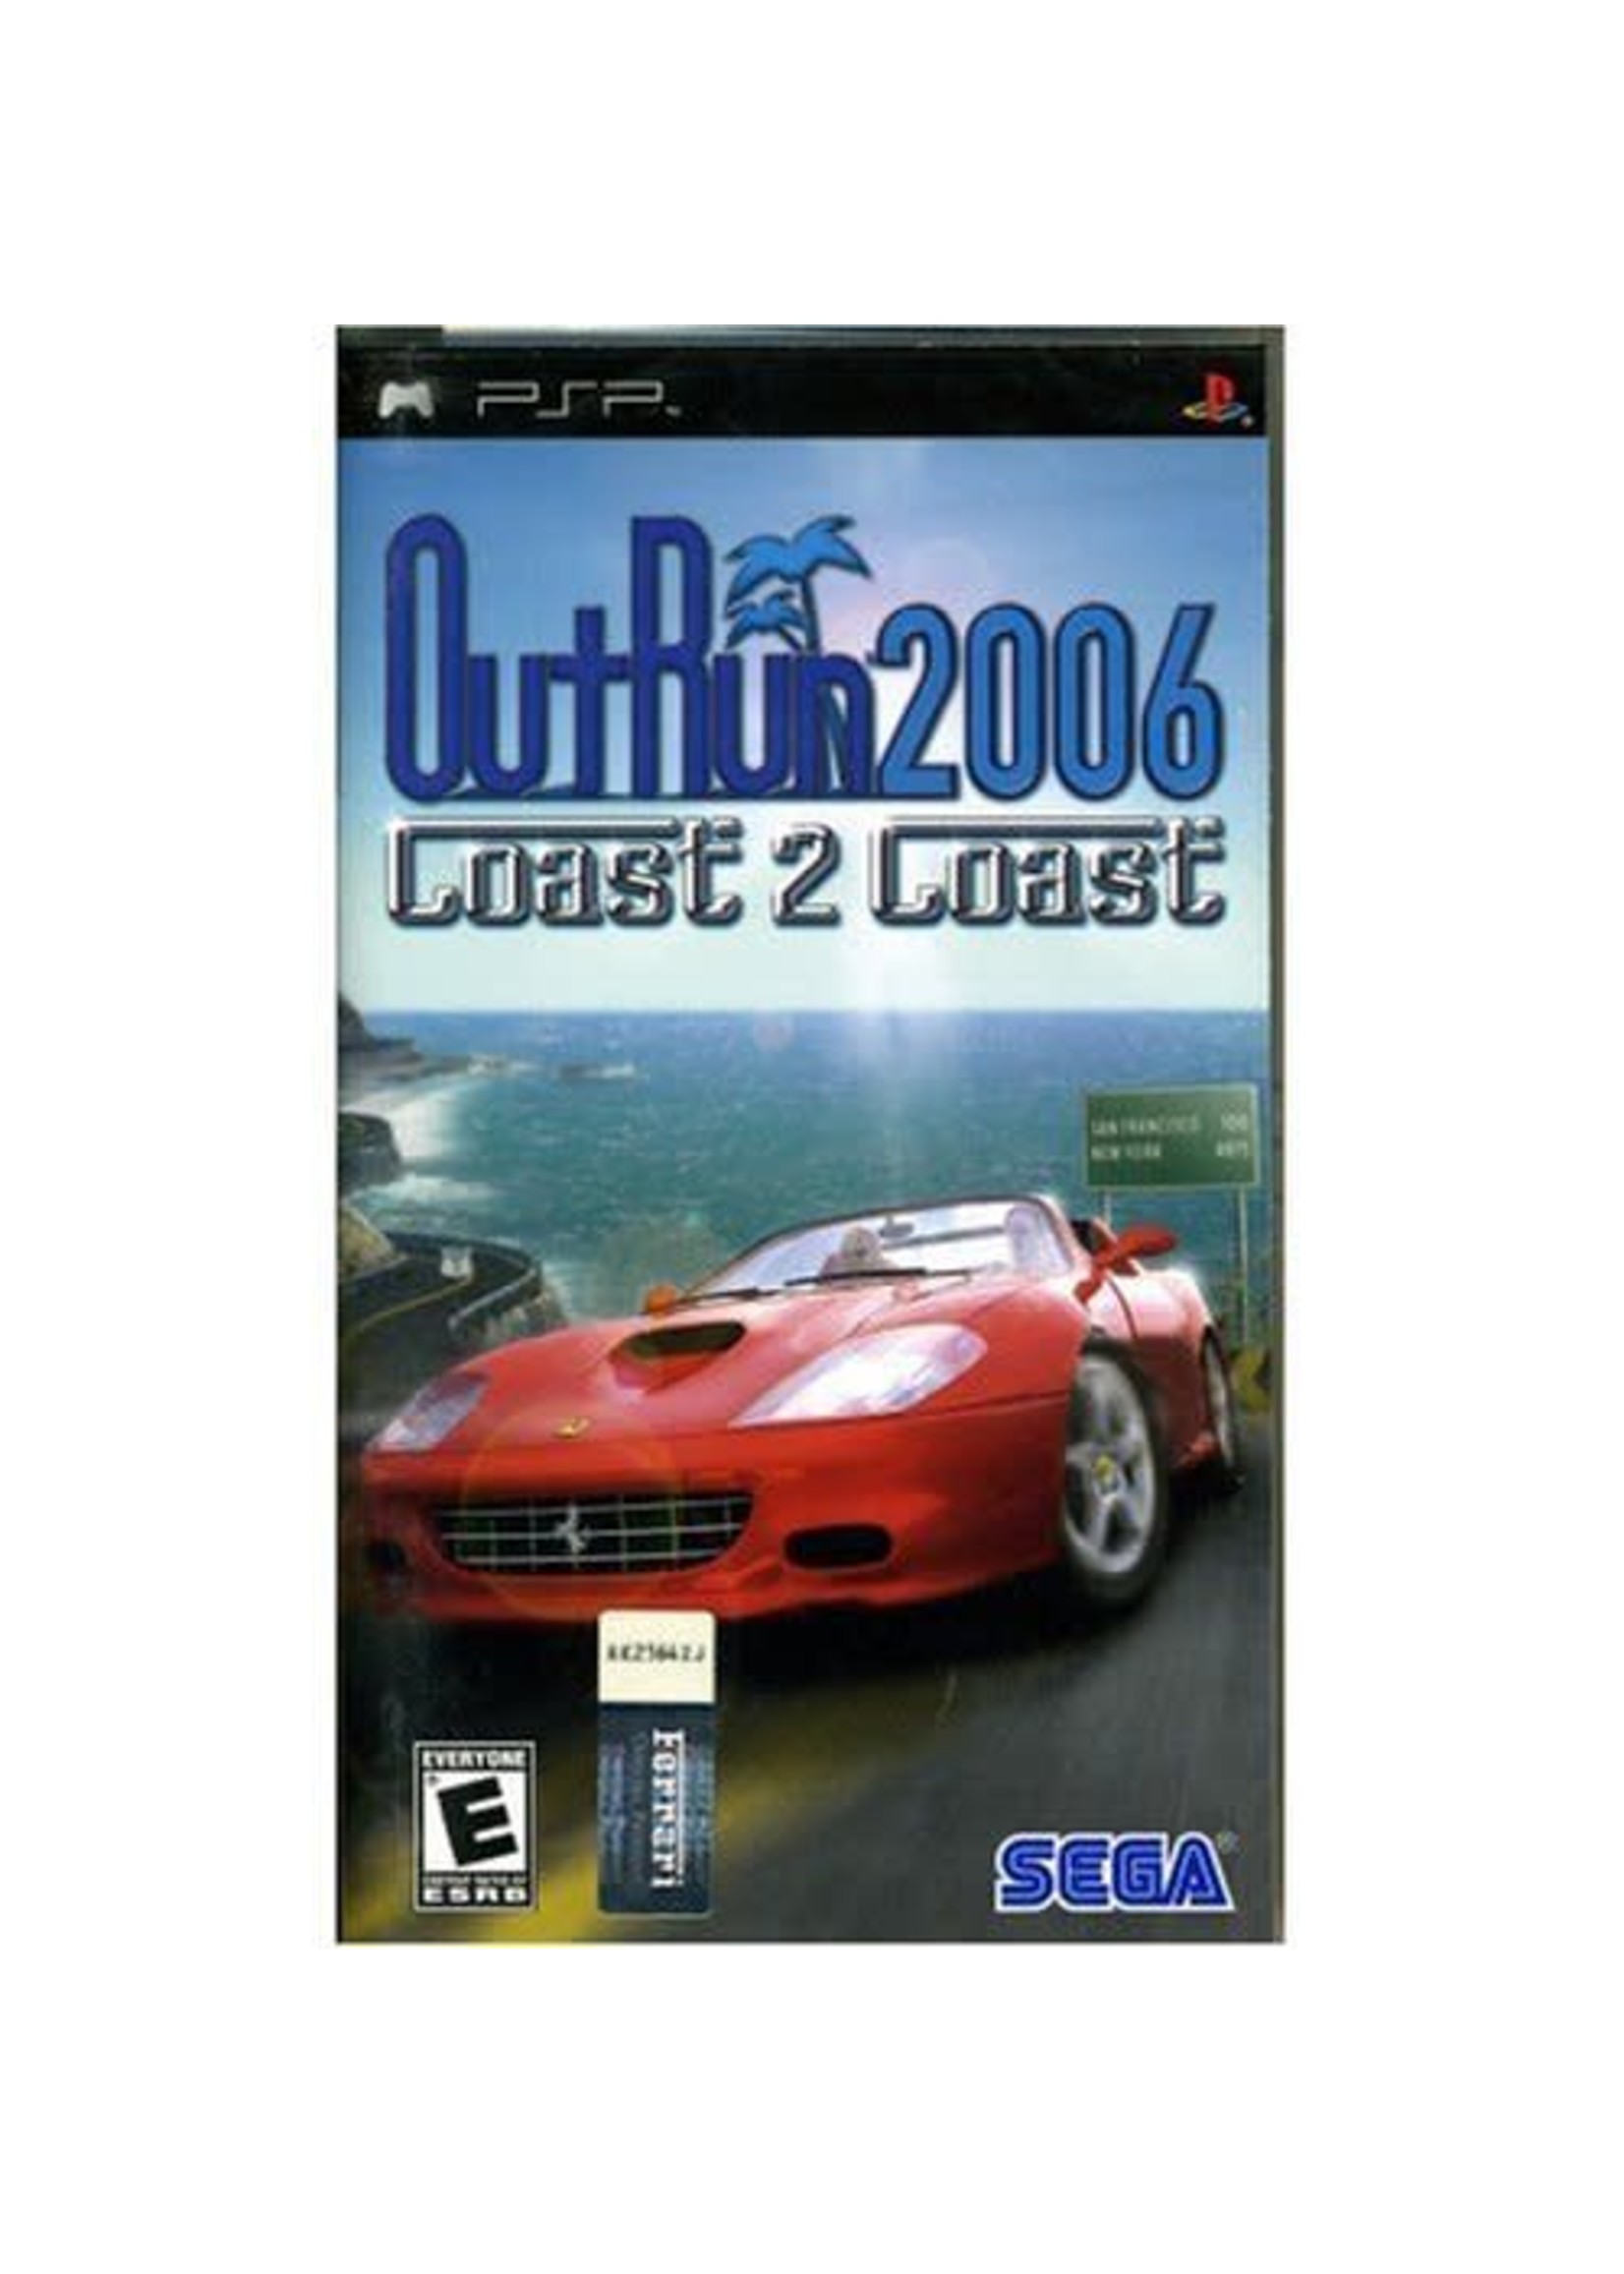 Outrun coast. Outrun 2006 Coast 2 Coast. Outrun 2006 PSP. Outrun 2006 Coast 2 Coast обложка. Outrun 2006 Coast 2 Coast PSP.